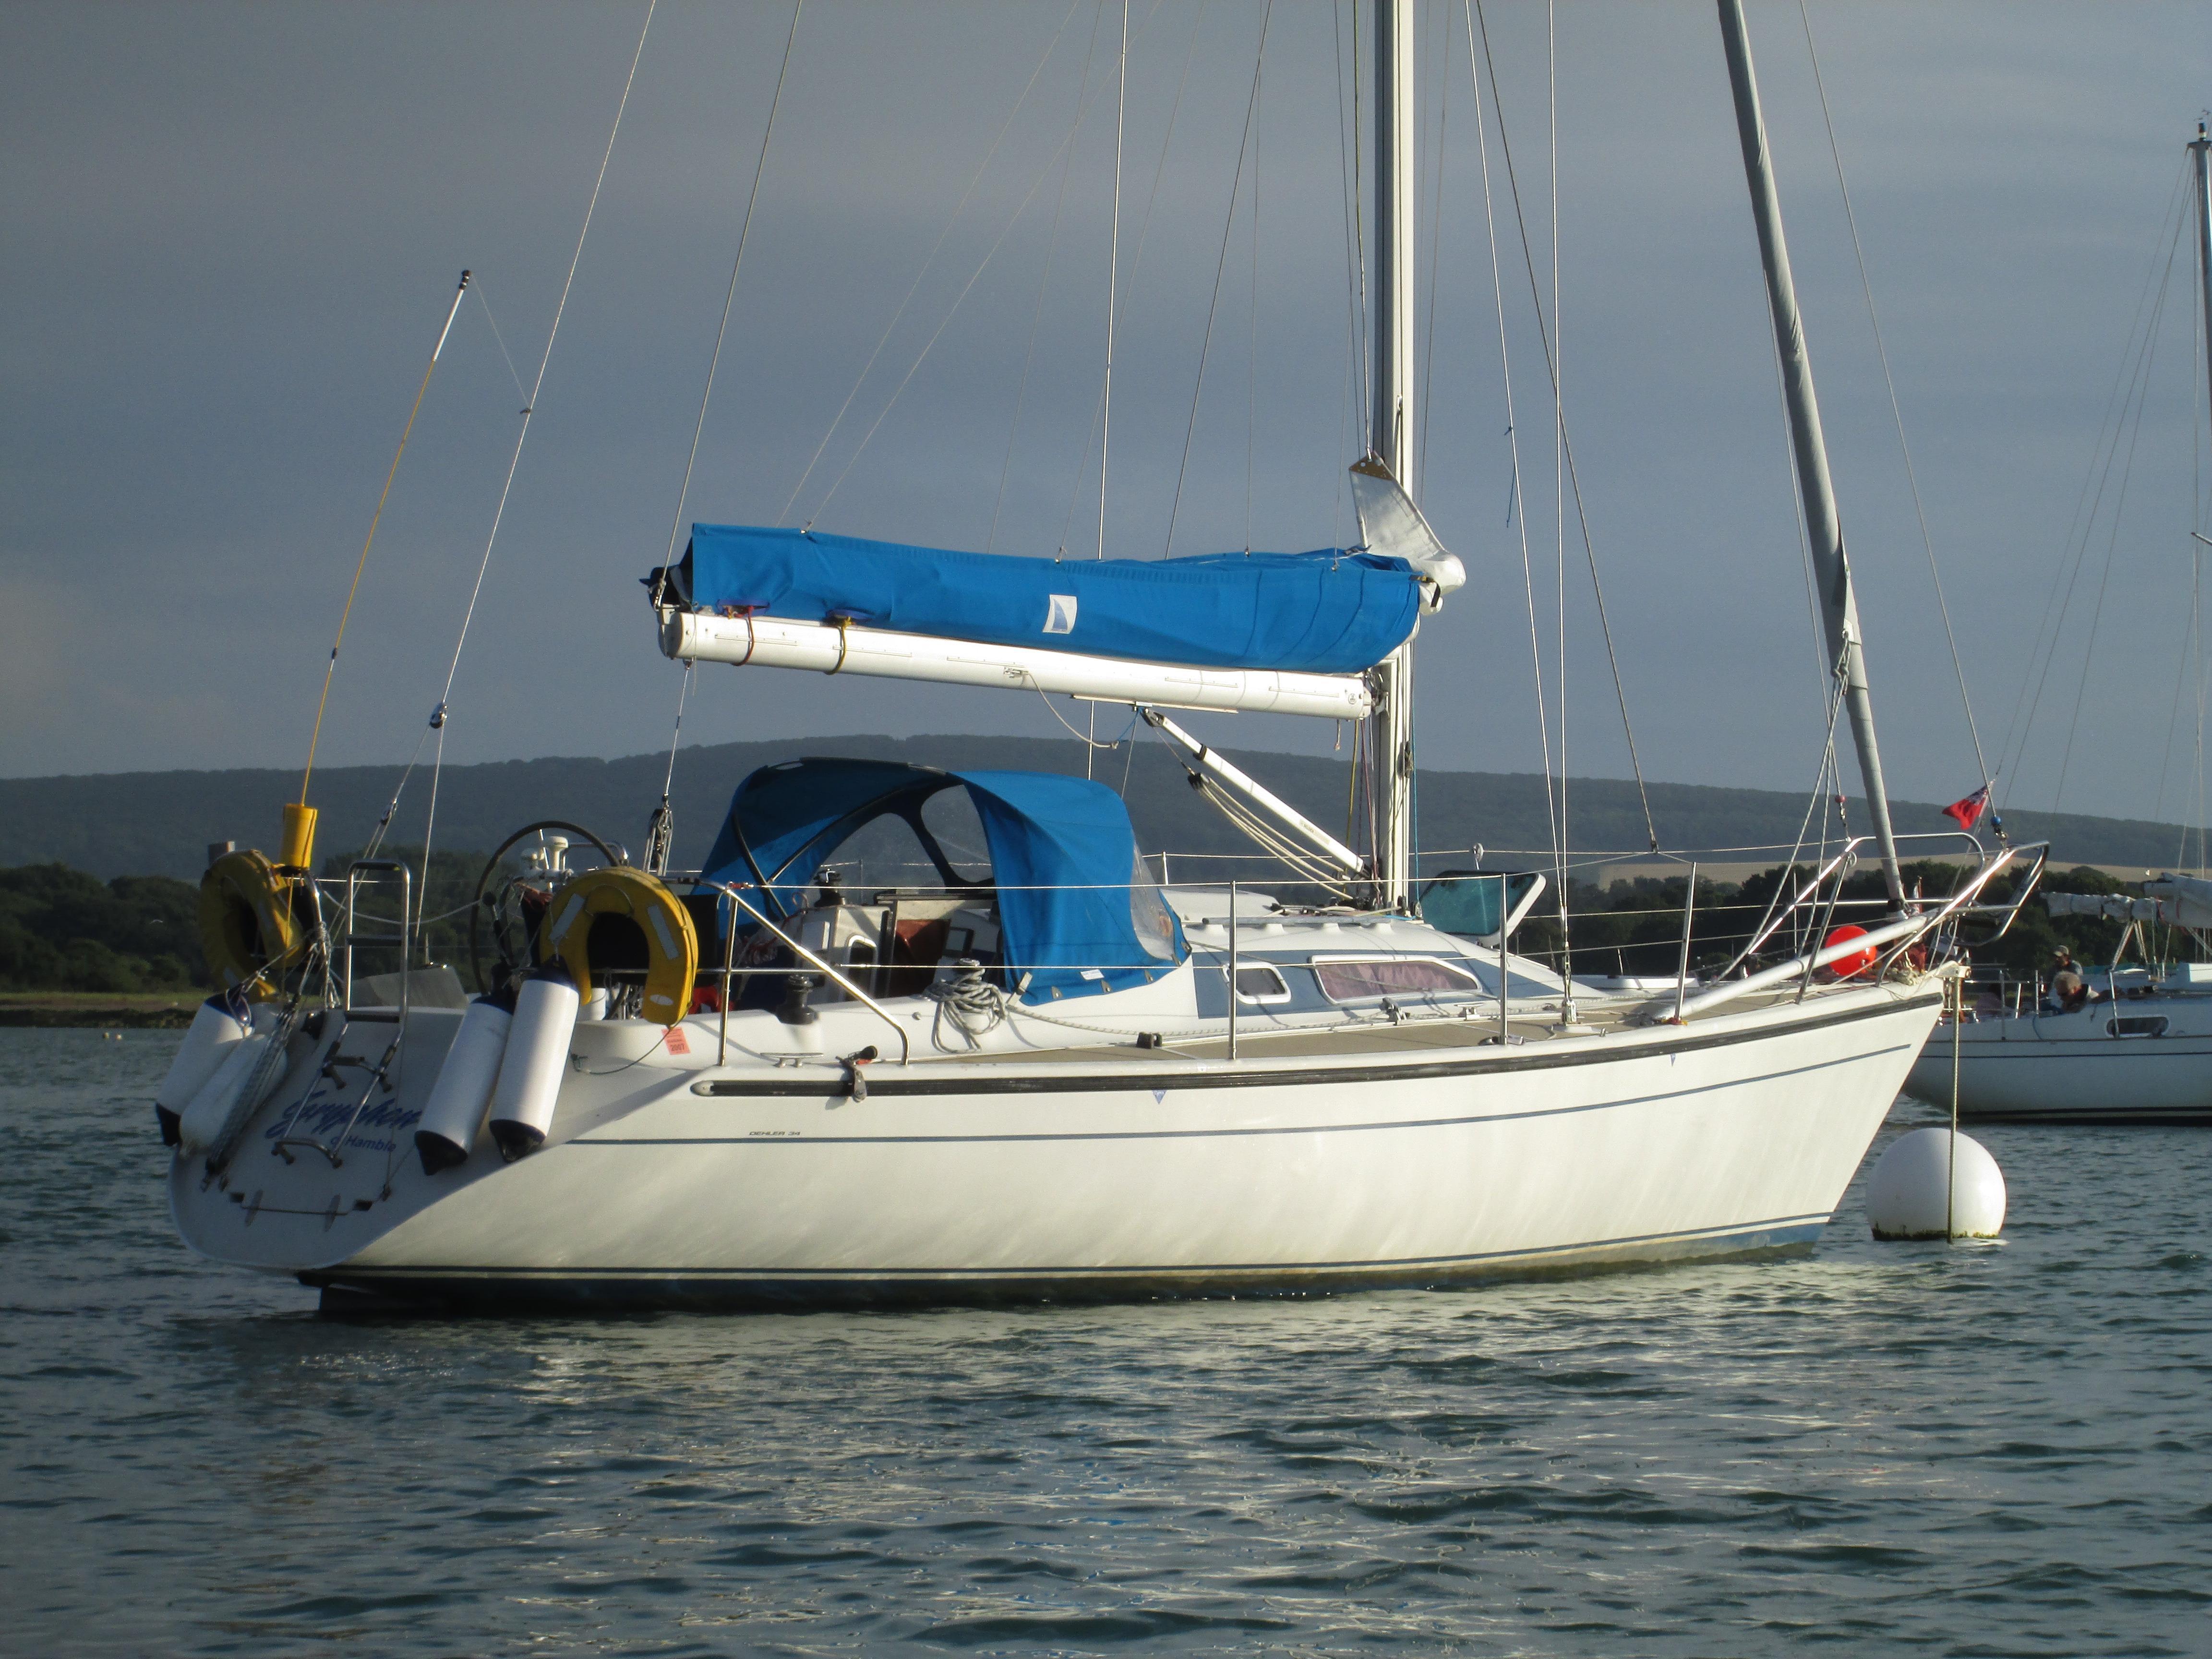 Dehler 34, Deacons Boatyard, Hampshire